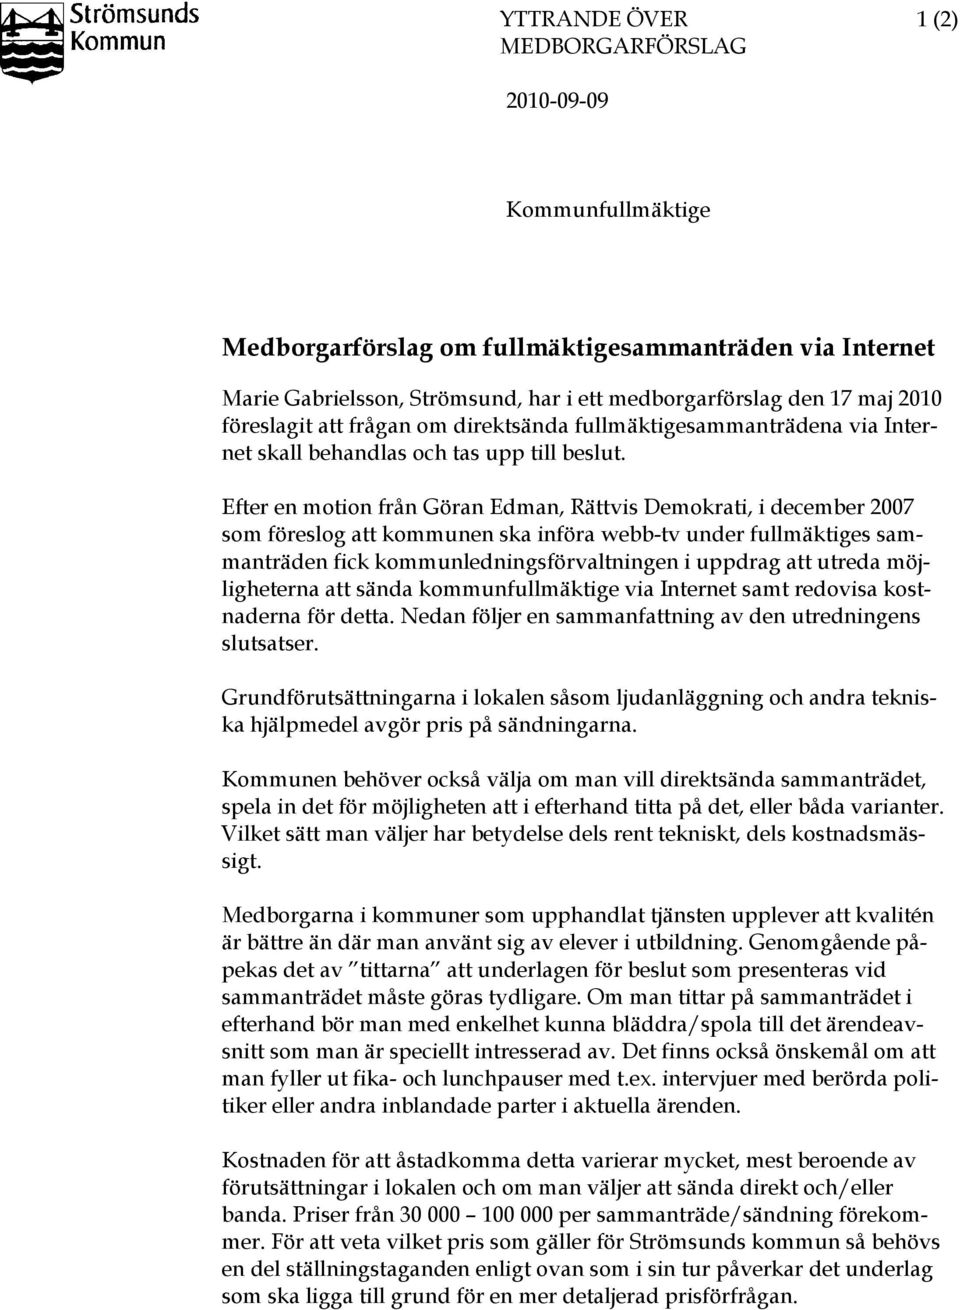 Efter en motion från Göran Edman, Rättvis Demokrati, i december 2007 som föreslog att kommunen ska införa webb-tv under fullmäktiges sammanträden fick kommunledningsförvaltningen i uppdrag att utreda